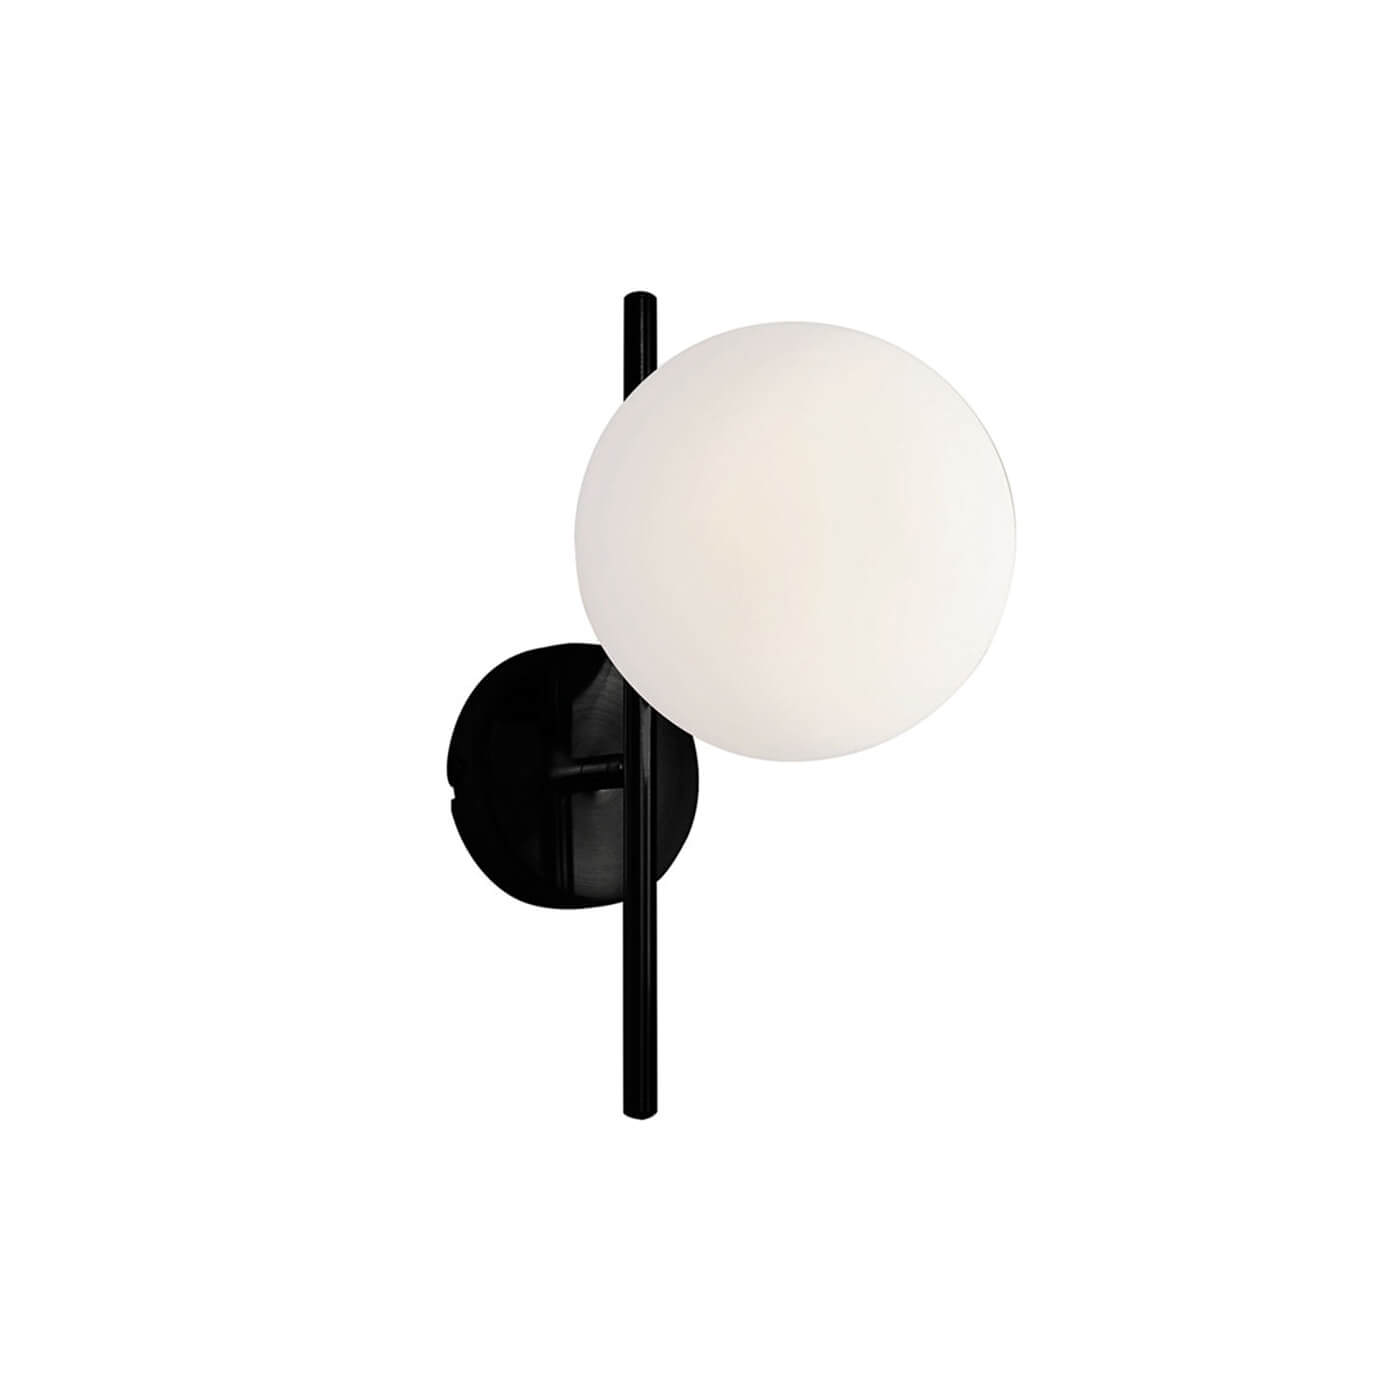 Cauti o aplica neagra FLORIS W1 cu glob alb din sticla - pentru living sau dormitor, design modern, elegant? Din colectia de lustre si corpuri de iluminat Domicilio